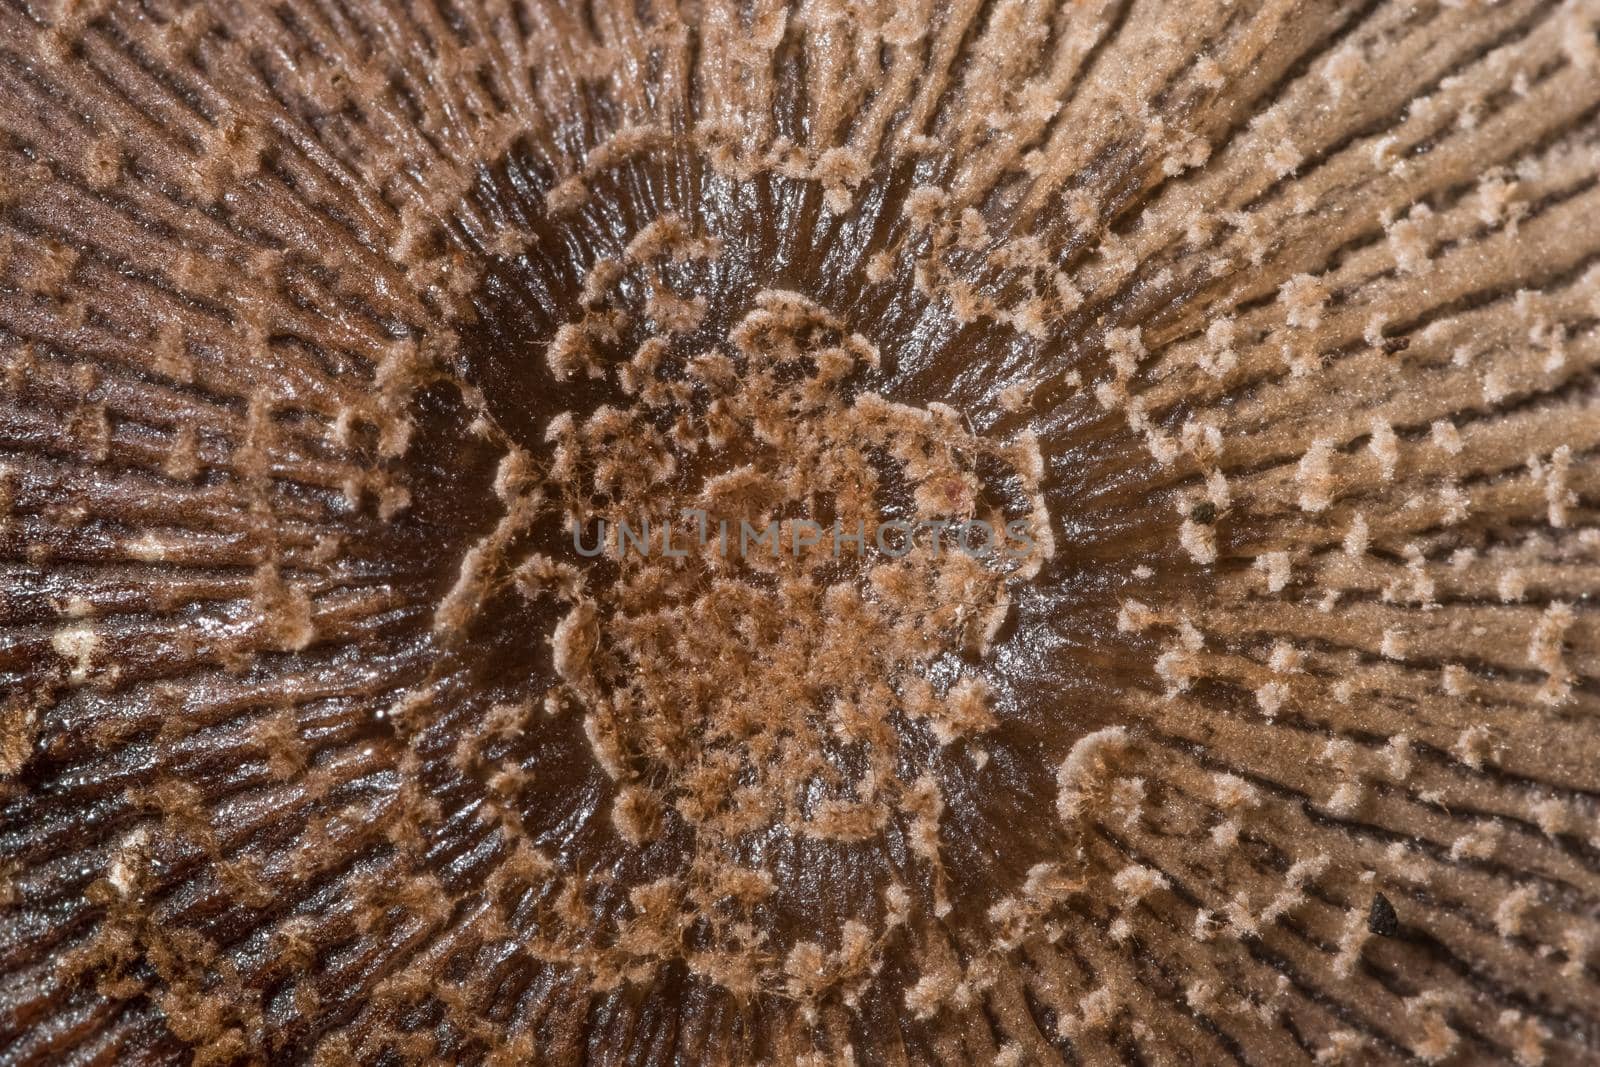 Macro mushroom surface